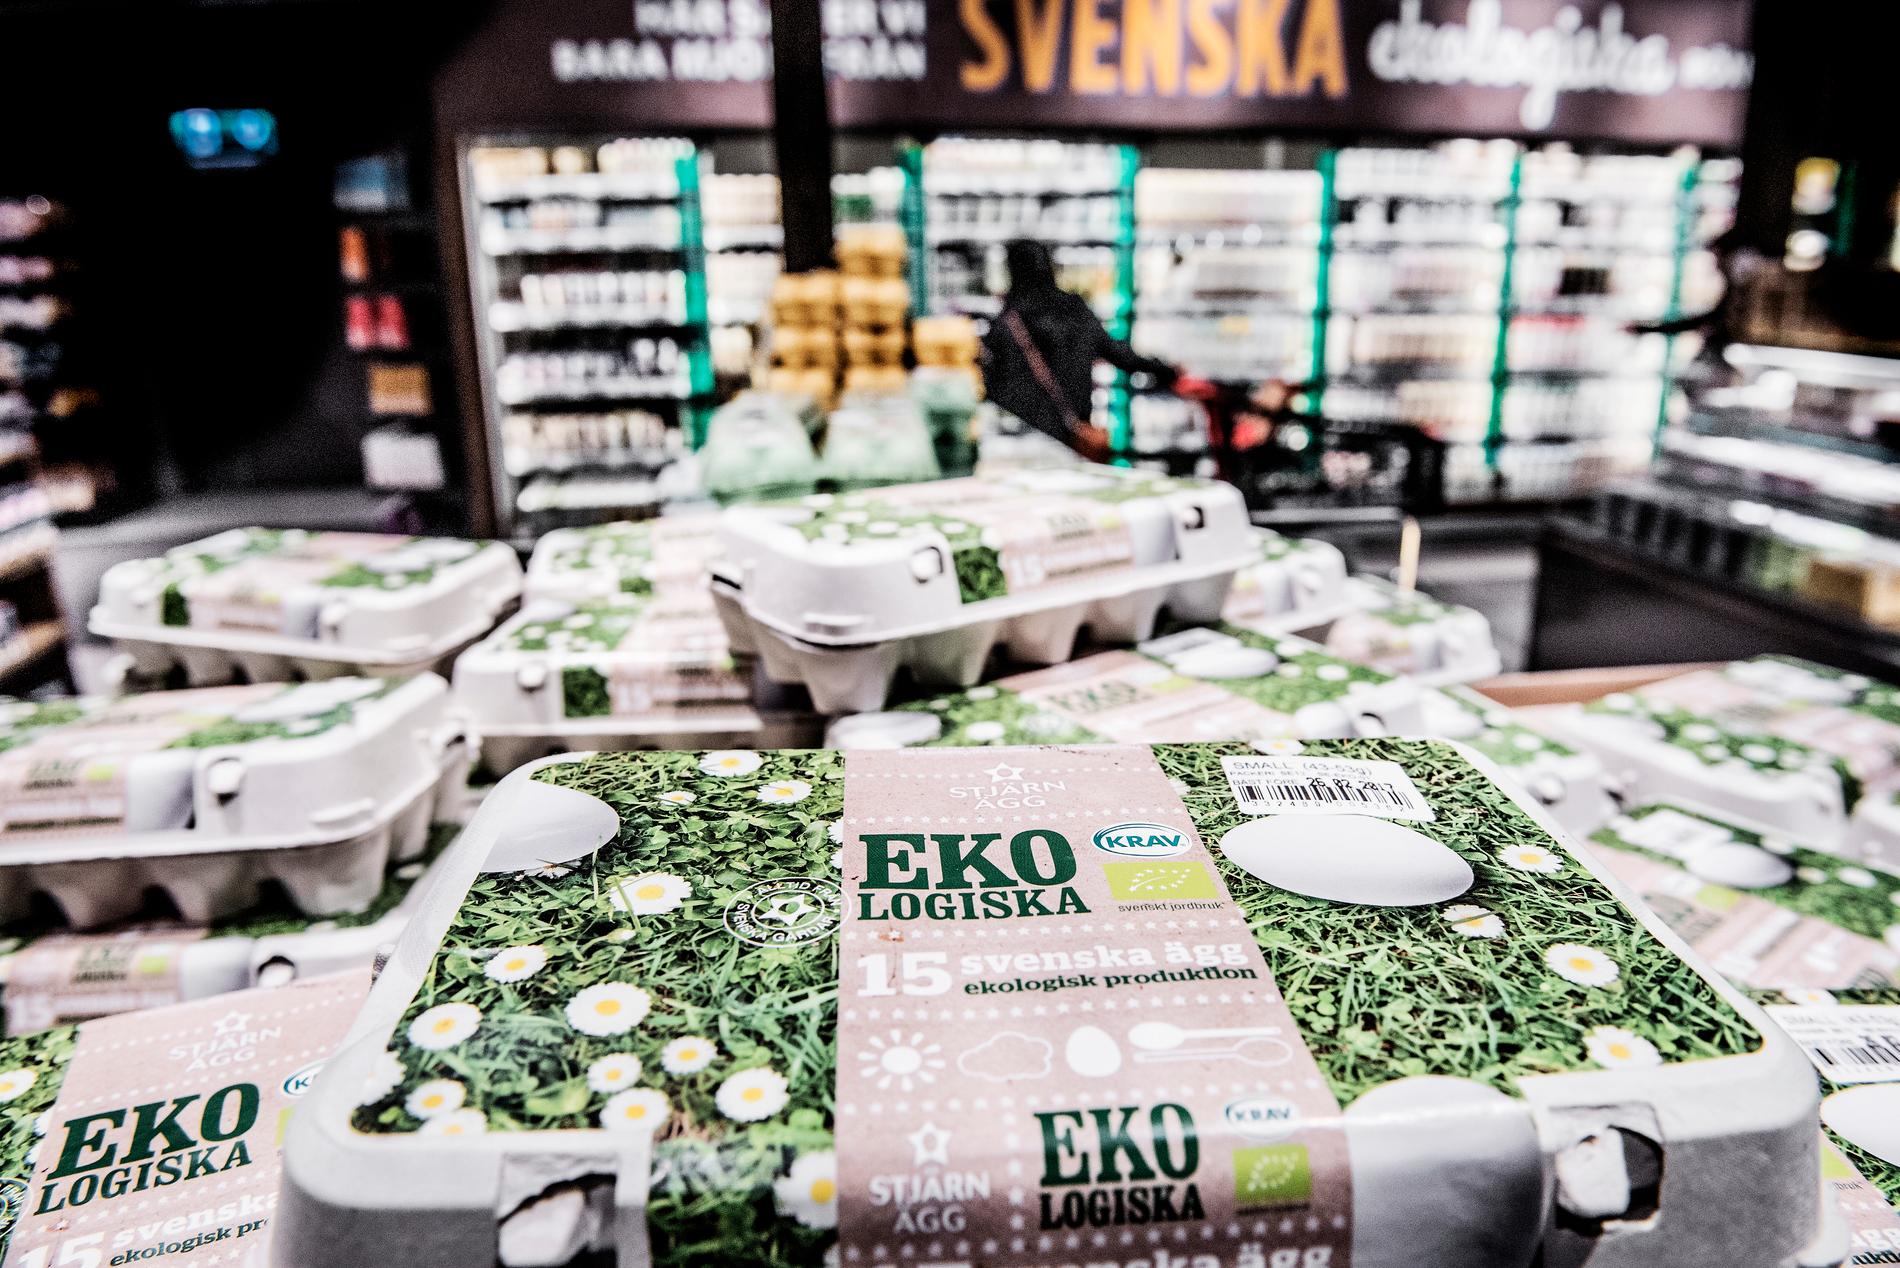 Försäljningen av ekologiska livsmedel i Sverige kommer öka med en miljard kronor varje år, enligt Ekowebs långtidsprognos. Det kan tyckas mycket, men prognosen tidigare pekade på en ökning om två miljarder kronor per år.